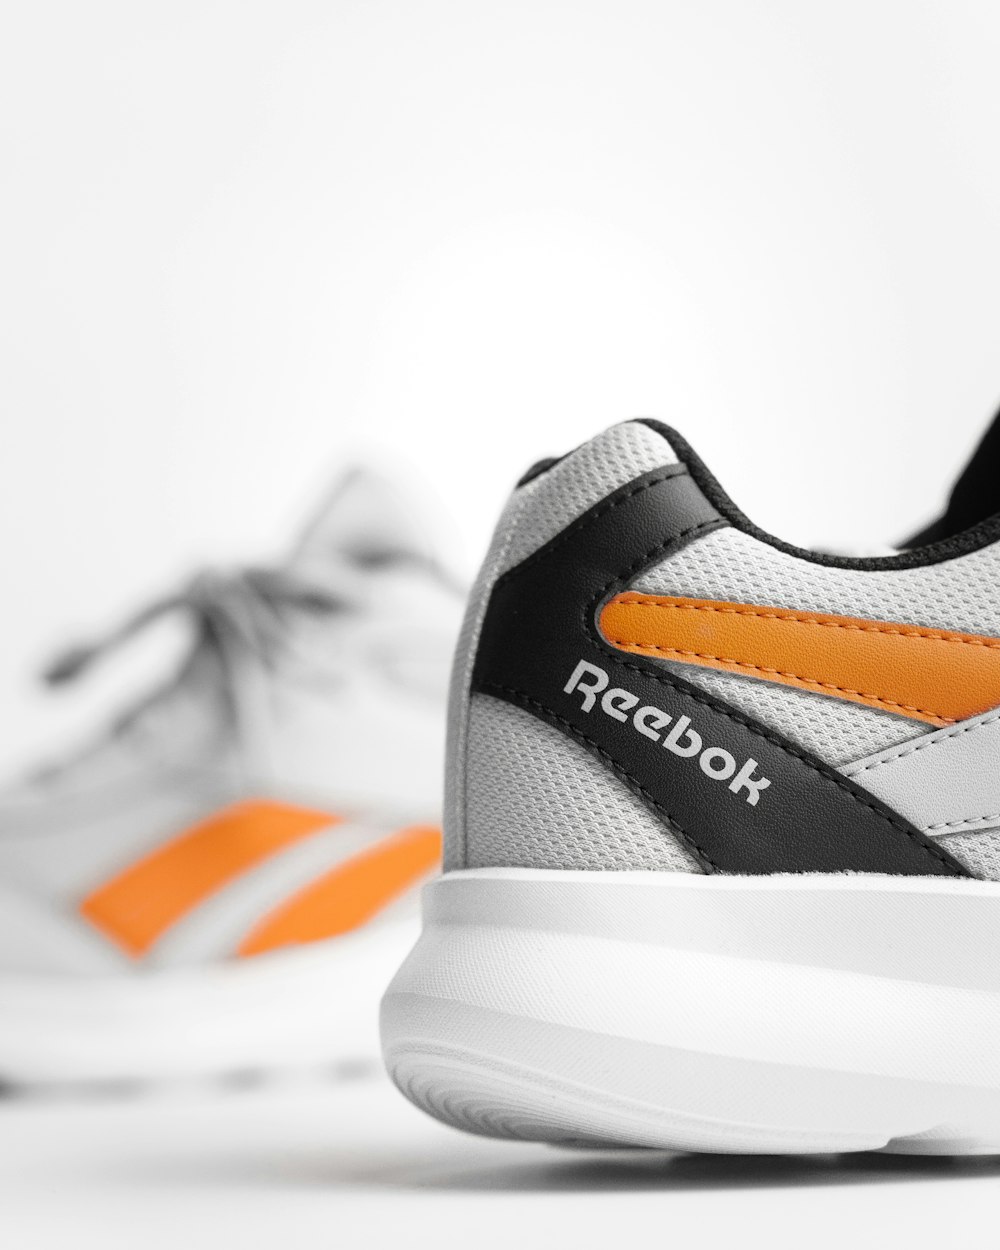 une paire de chaussures blanches et orange sur une surface blanche